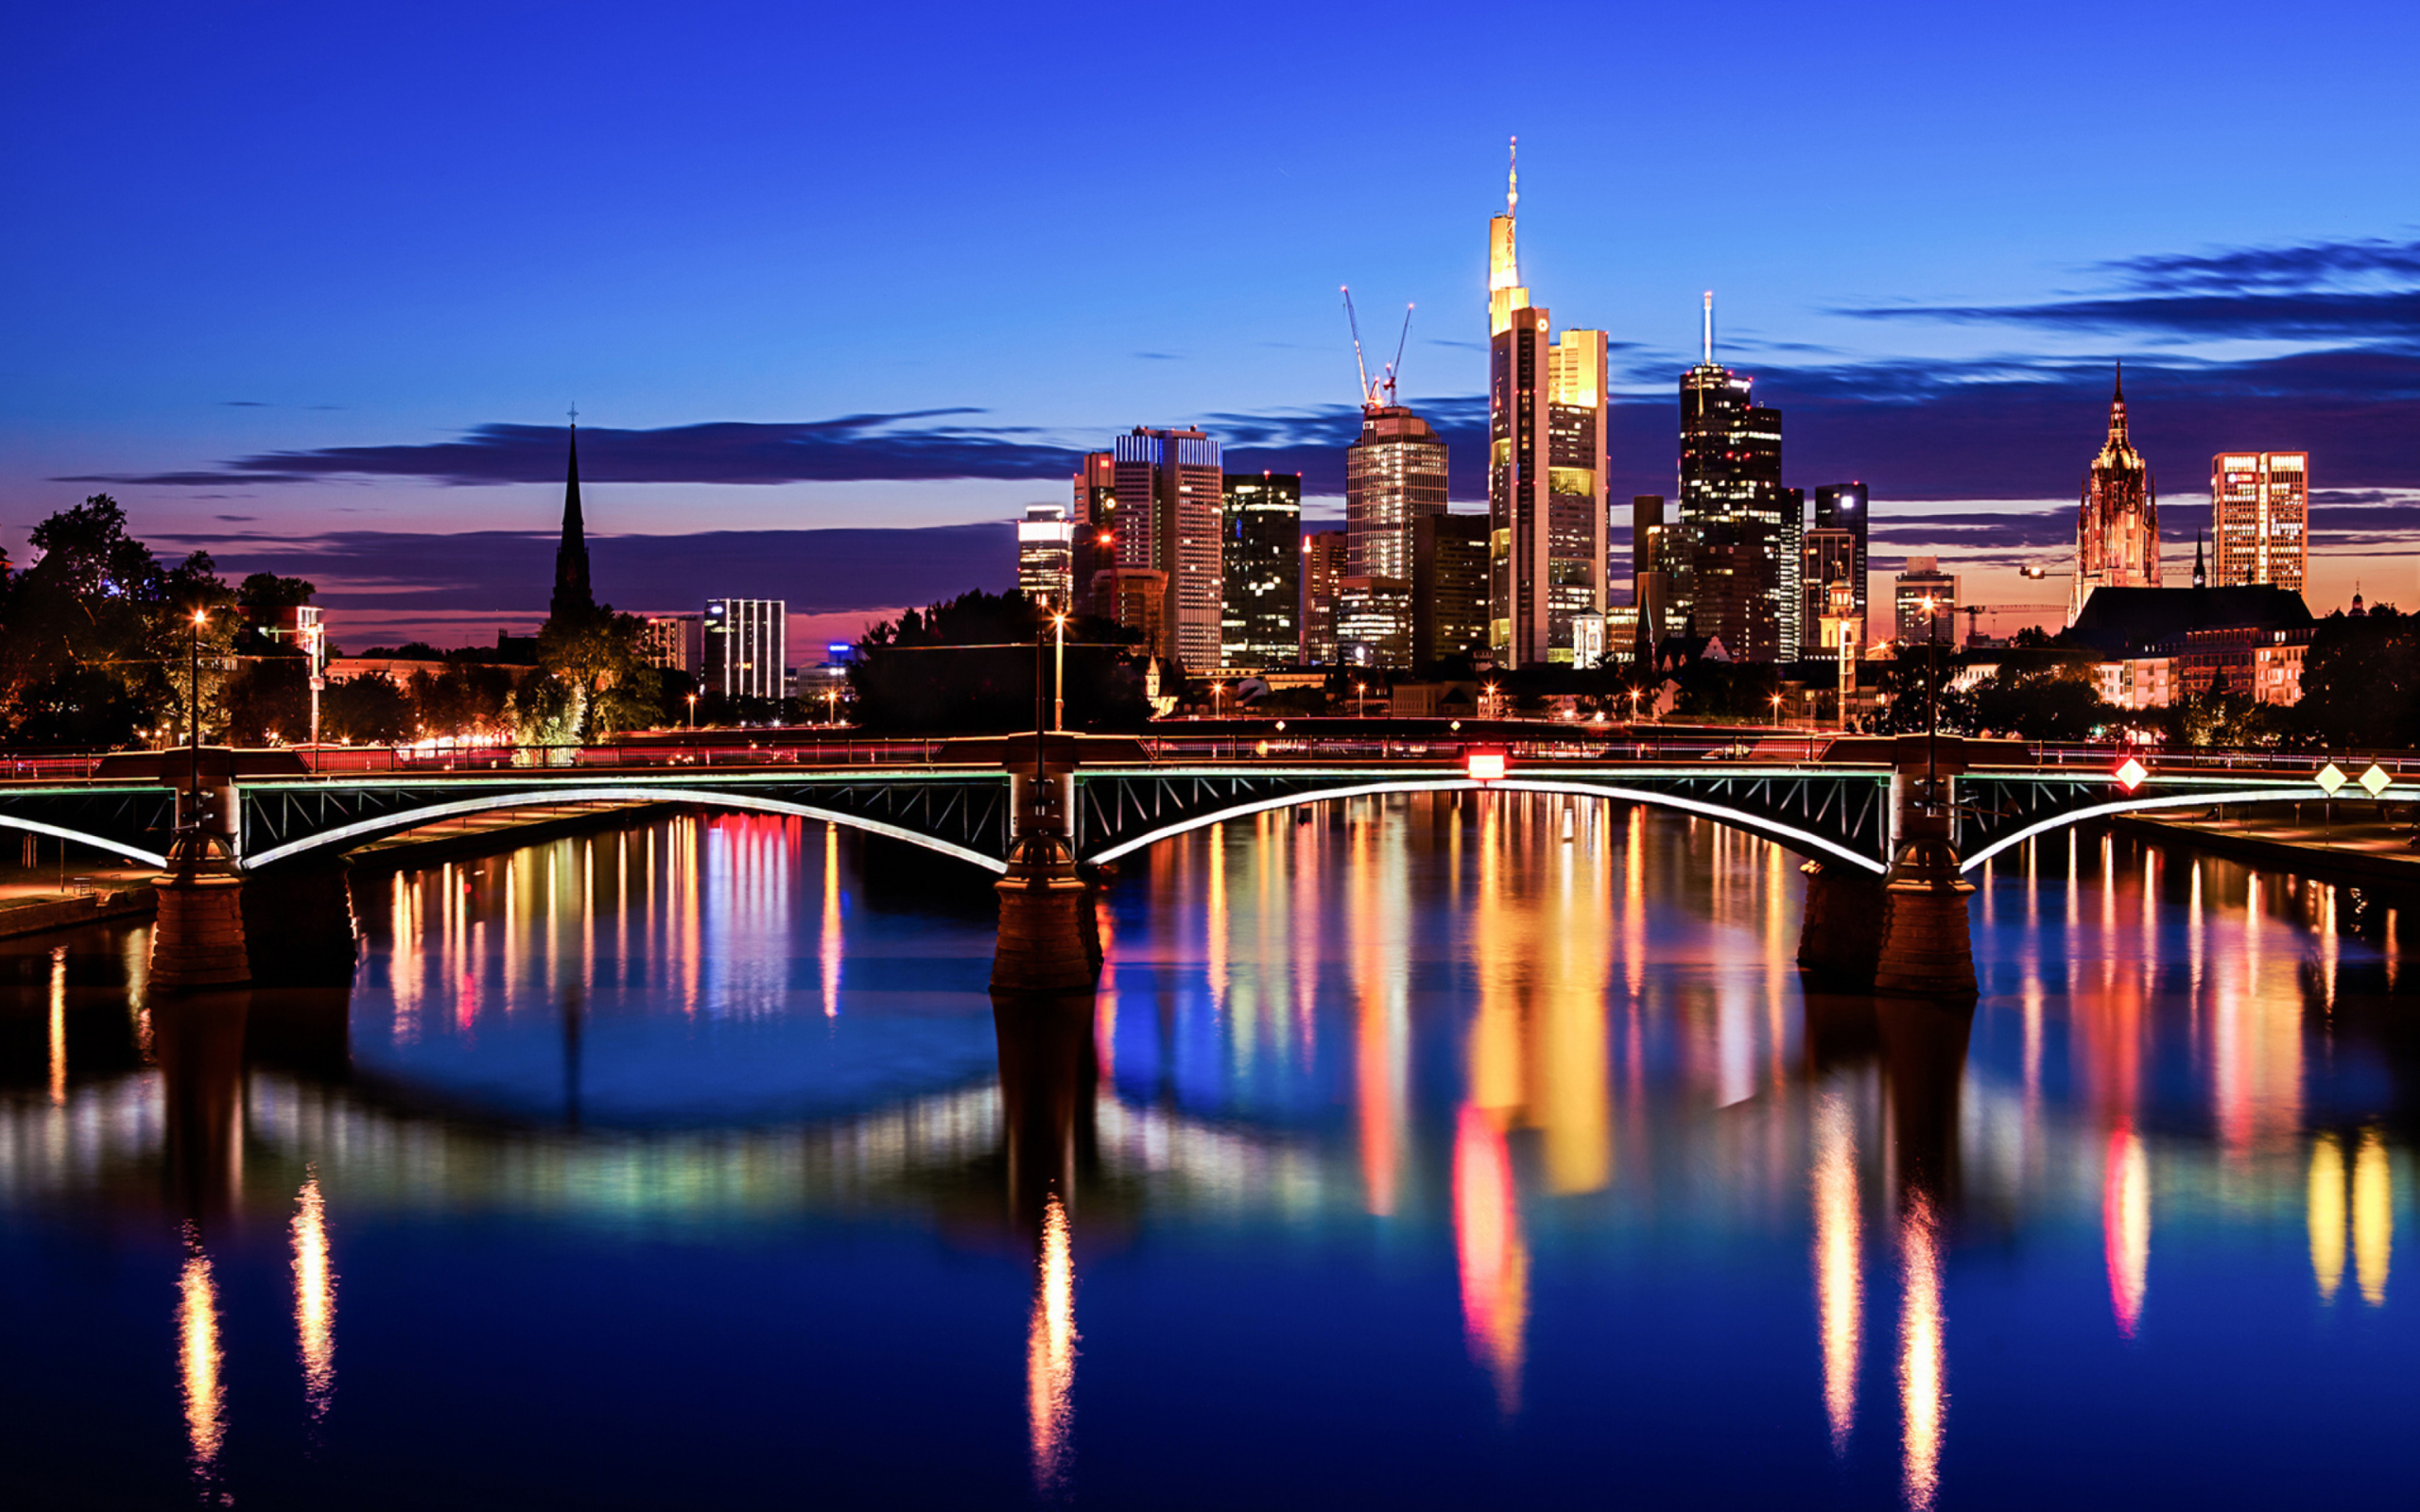 Deutschland, Frankfurt am Main wallpaper 2560x1600